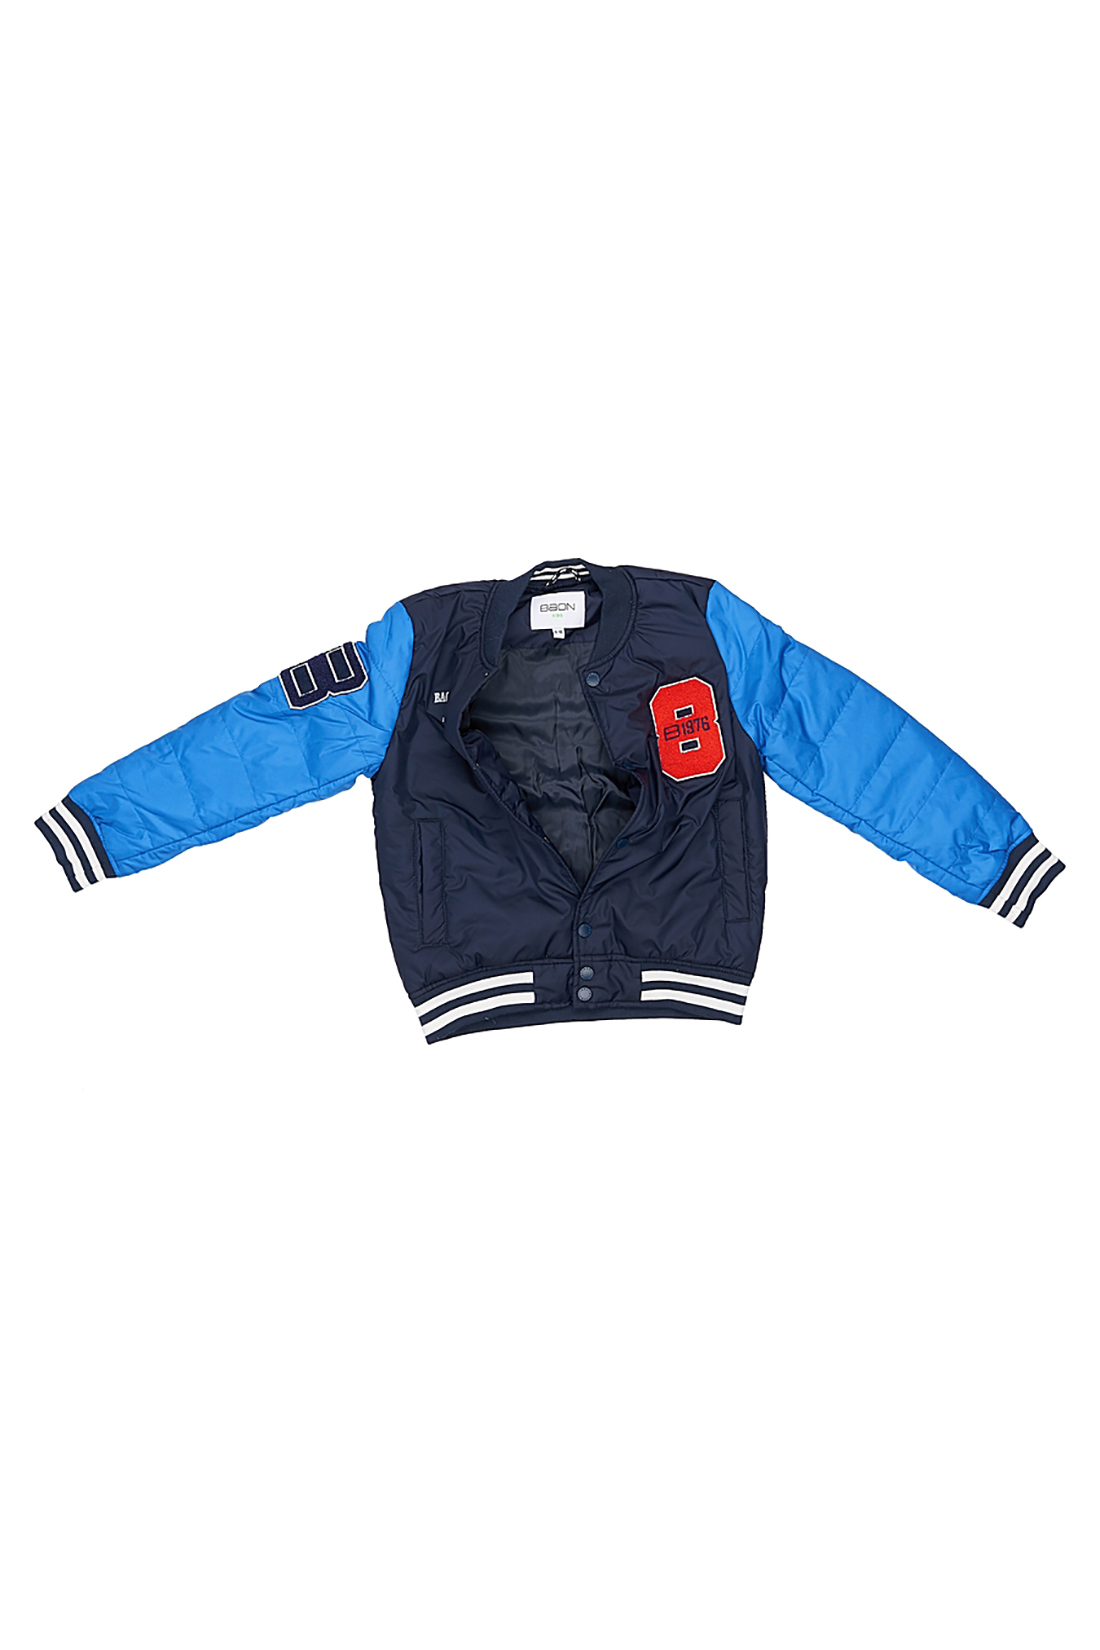 Куртка для мальчика (арт. baon BJ538003), размер 146-152, цвет синий Куртка для мальчика (арт. baon BJ538003) - фото 2